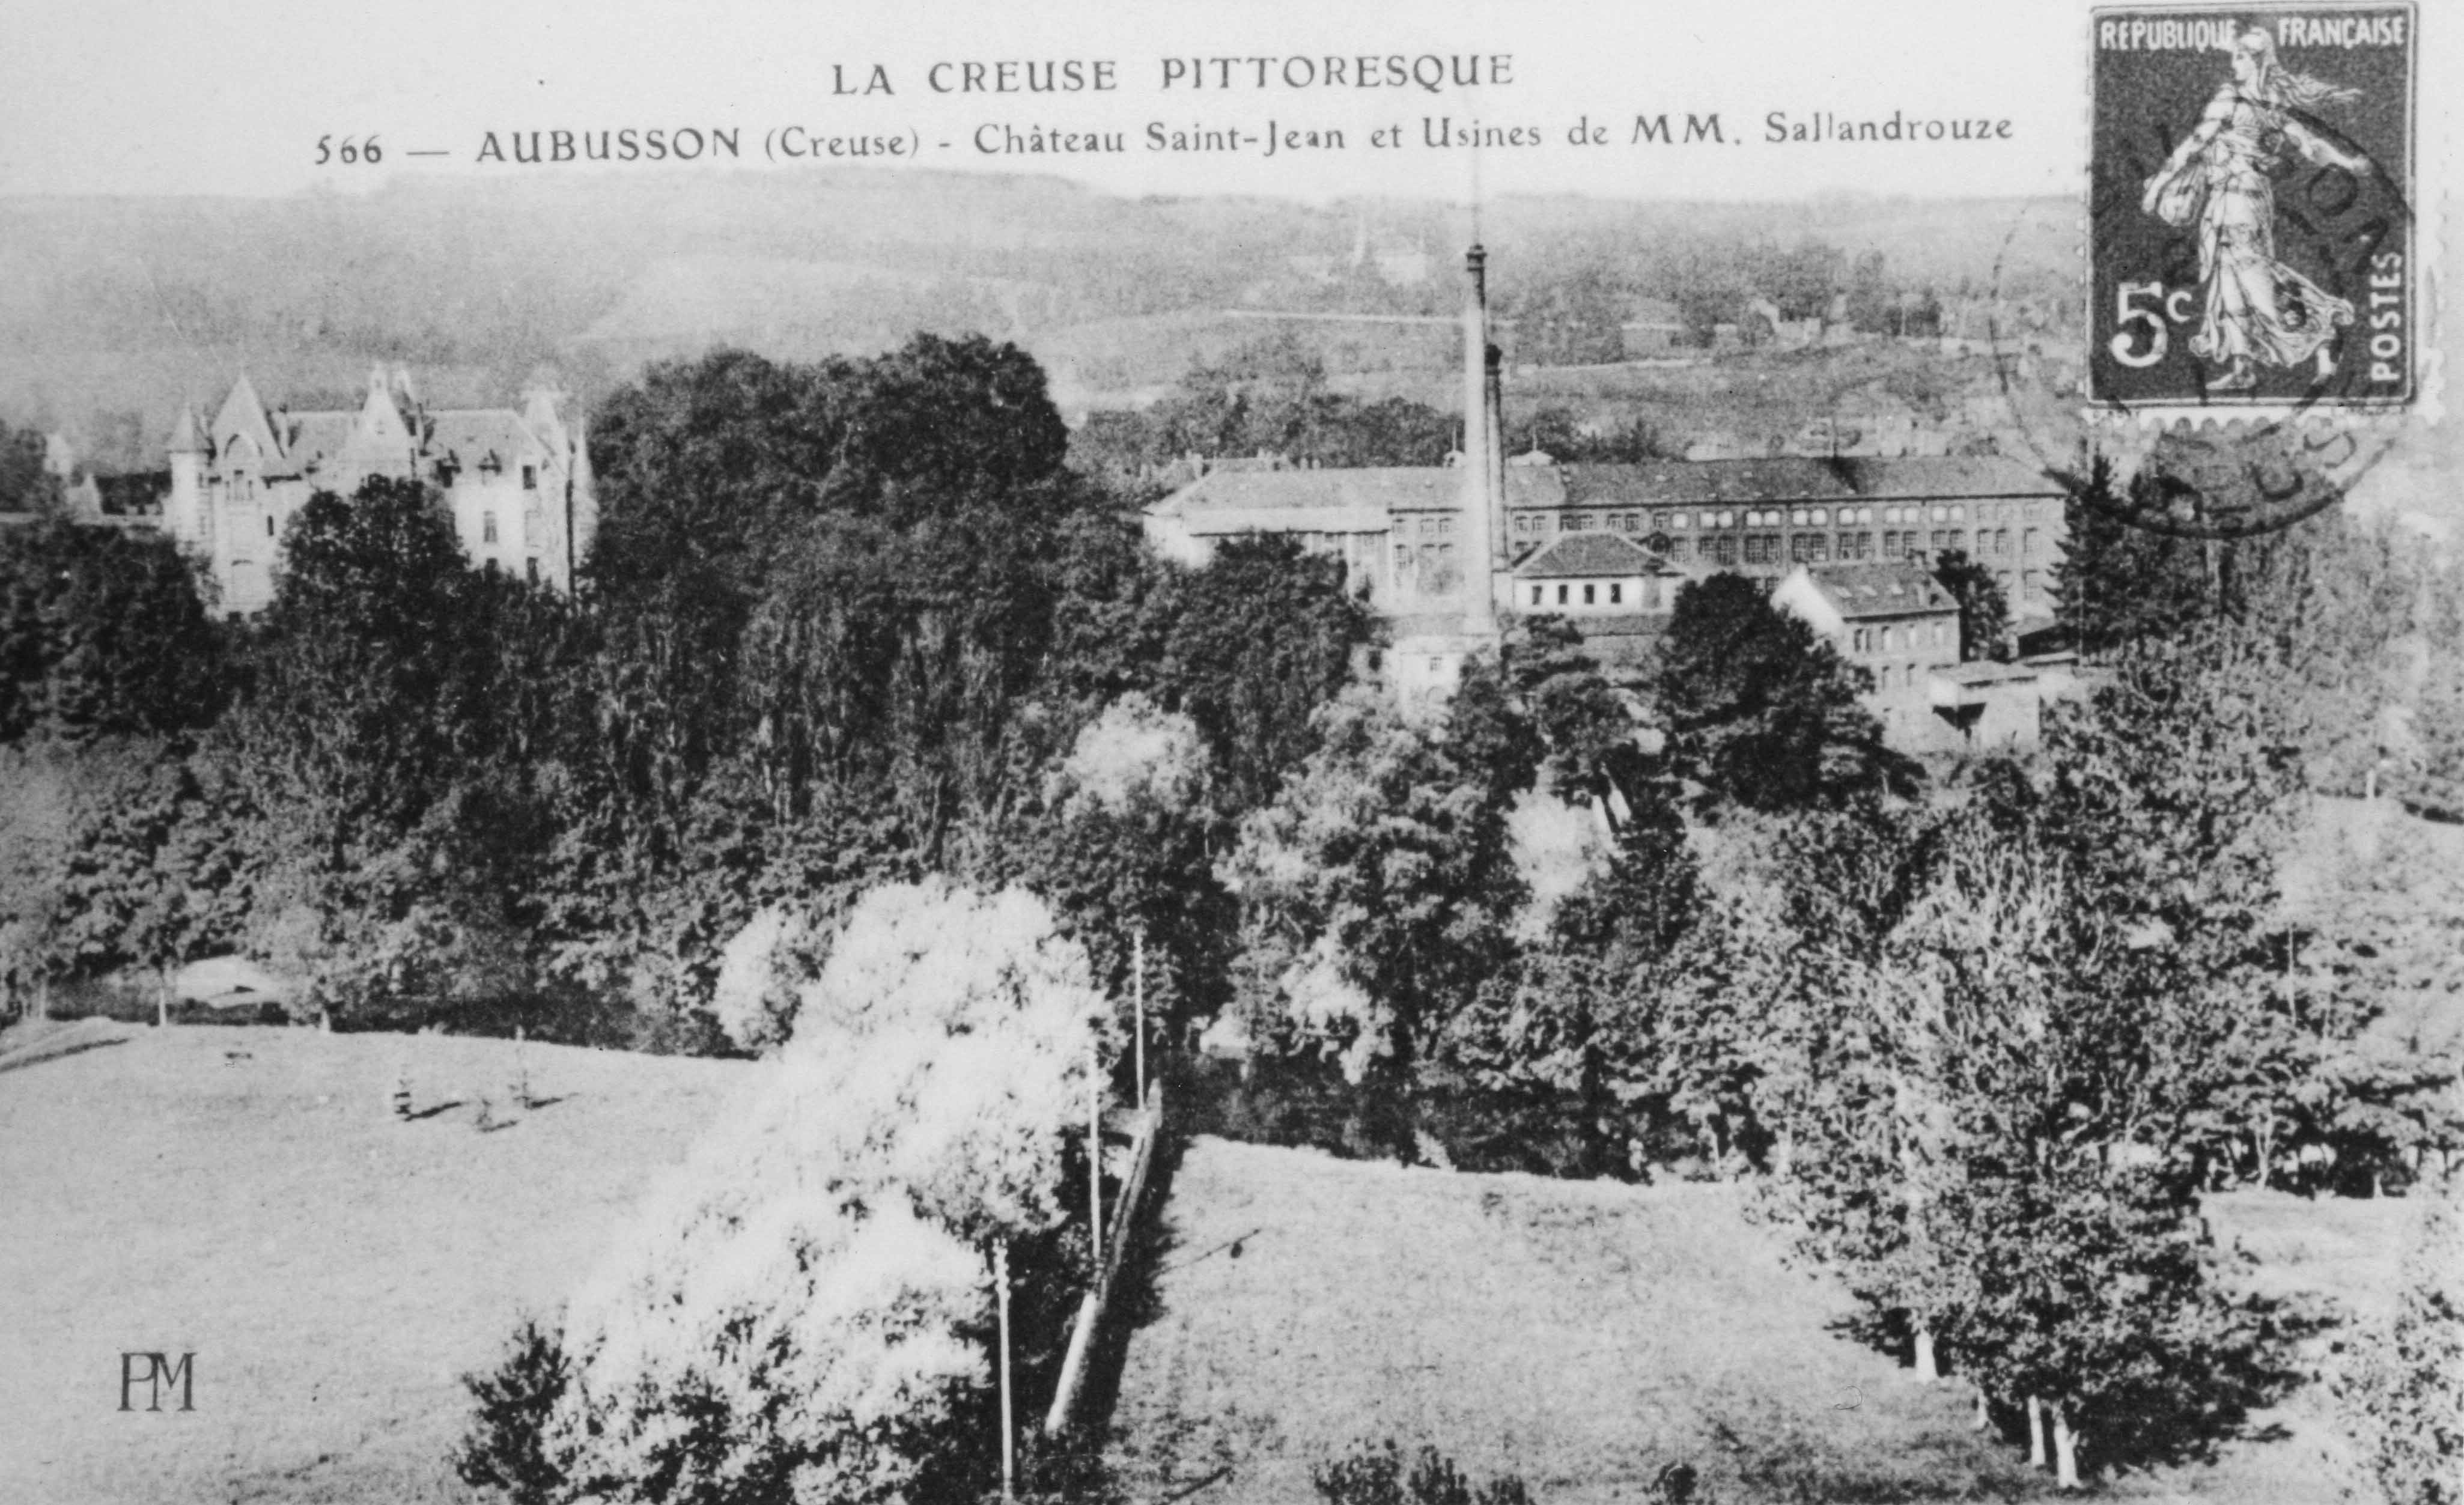 Carte postale (1er quart du 20e siècle) du quartier des usines Sallandrouze, avec le château Saint-Jean (Aubusson, centre de documentation du Musée départemental de la Tapisserie)